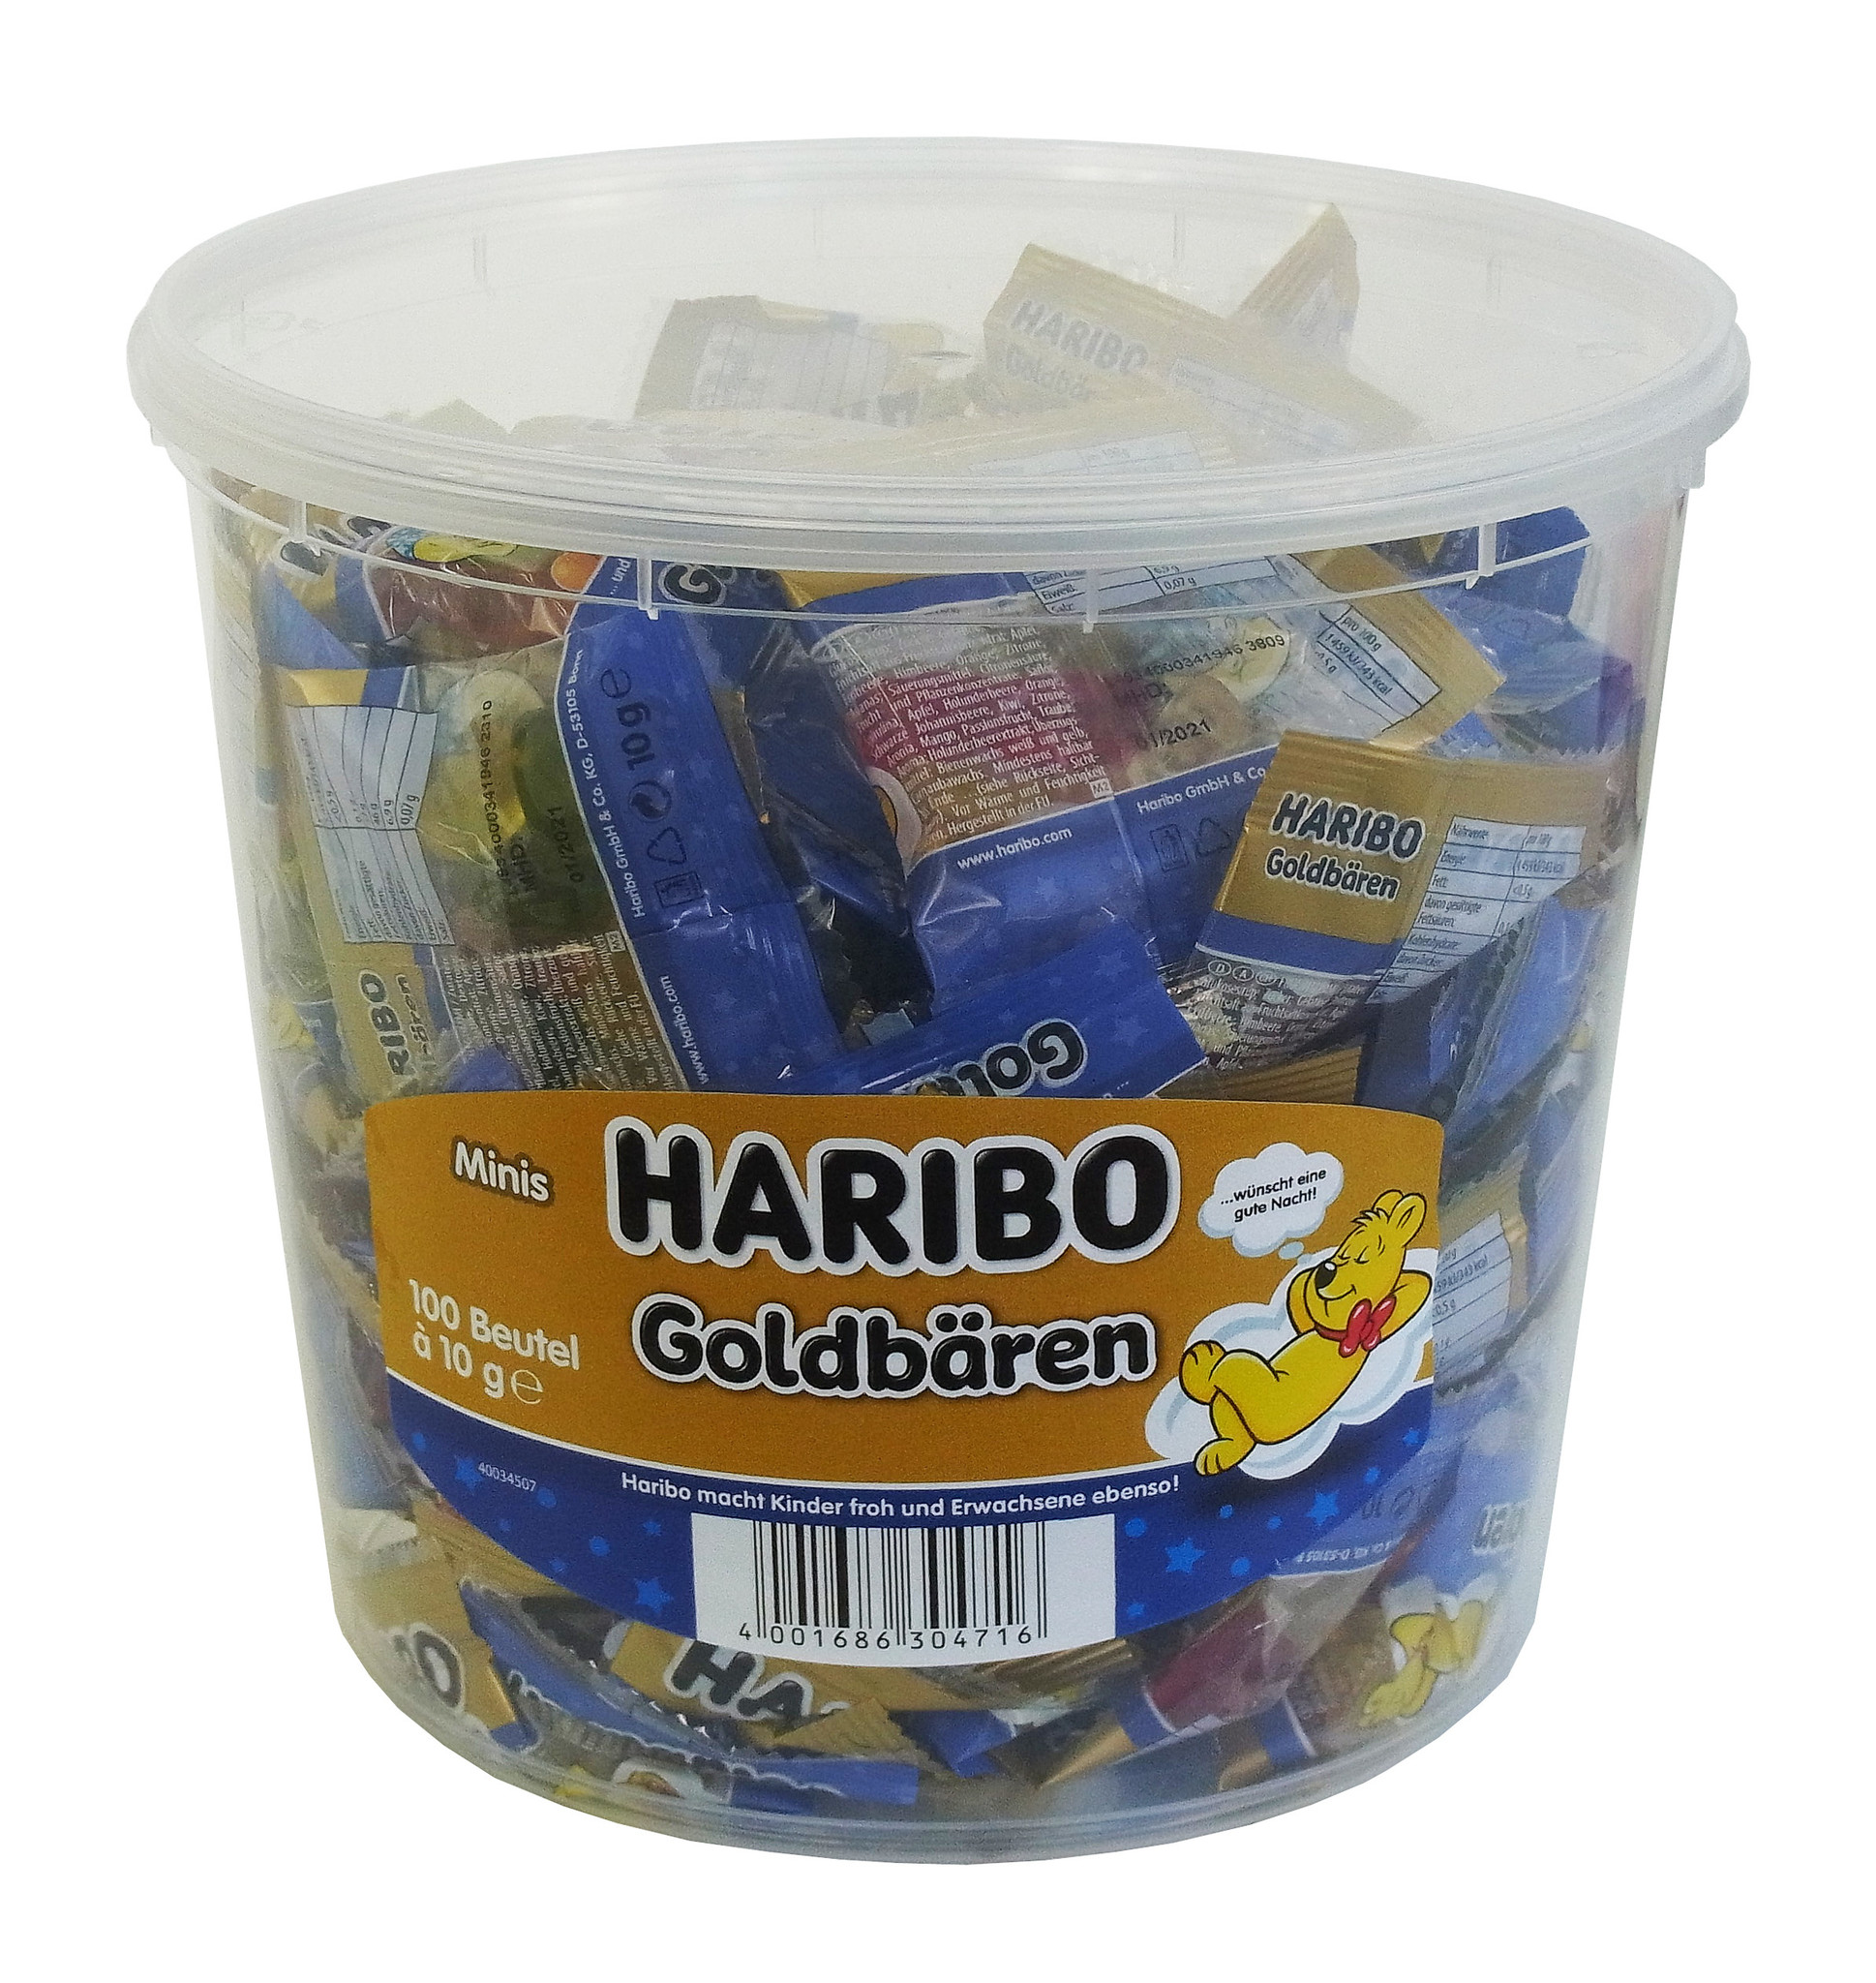 Haribo Gute Nacht Goldbären 100 x 10g Mini Beutel